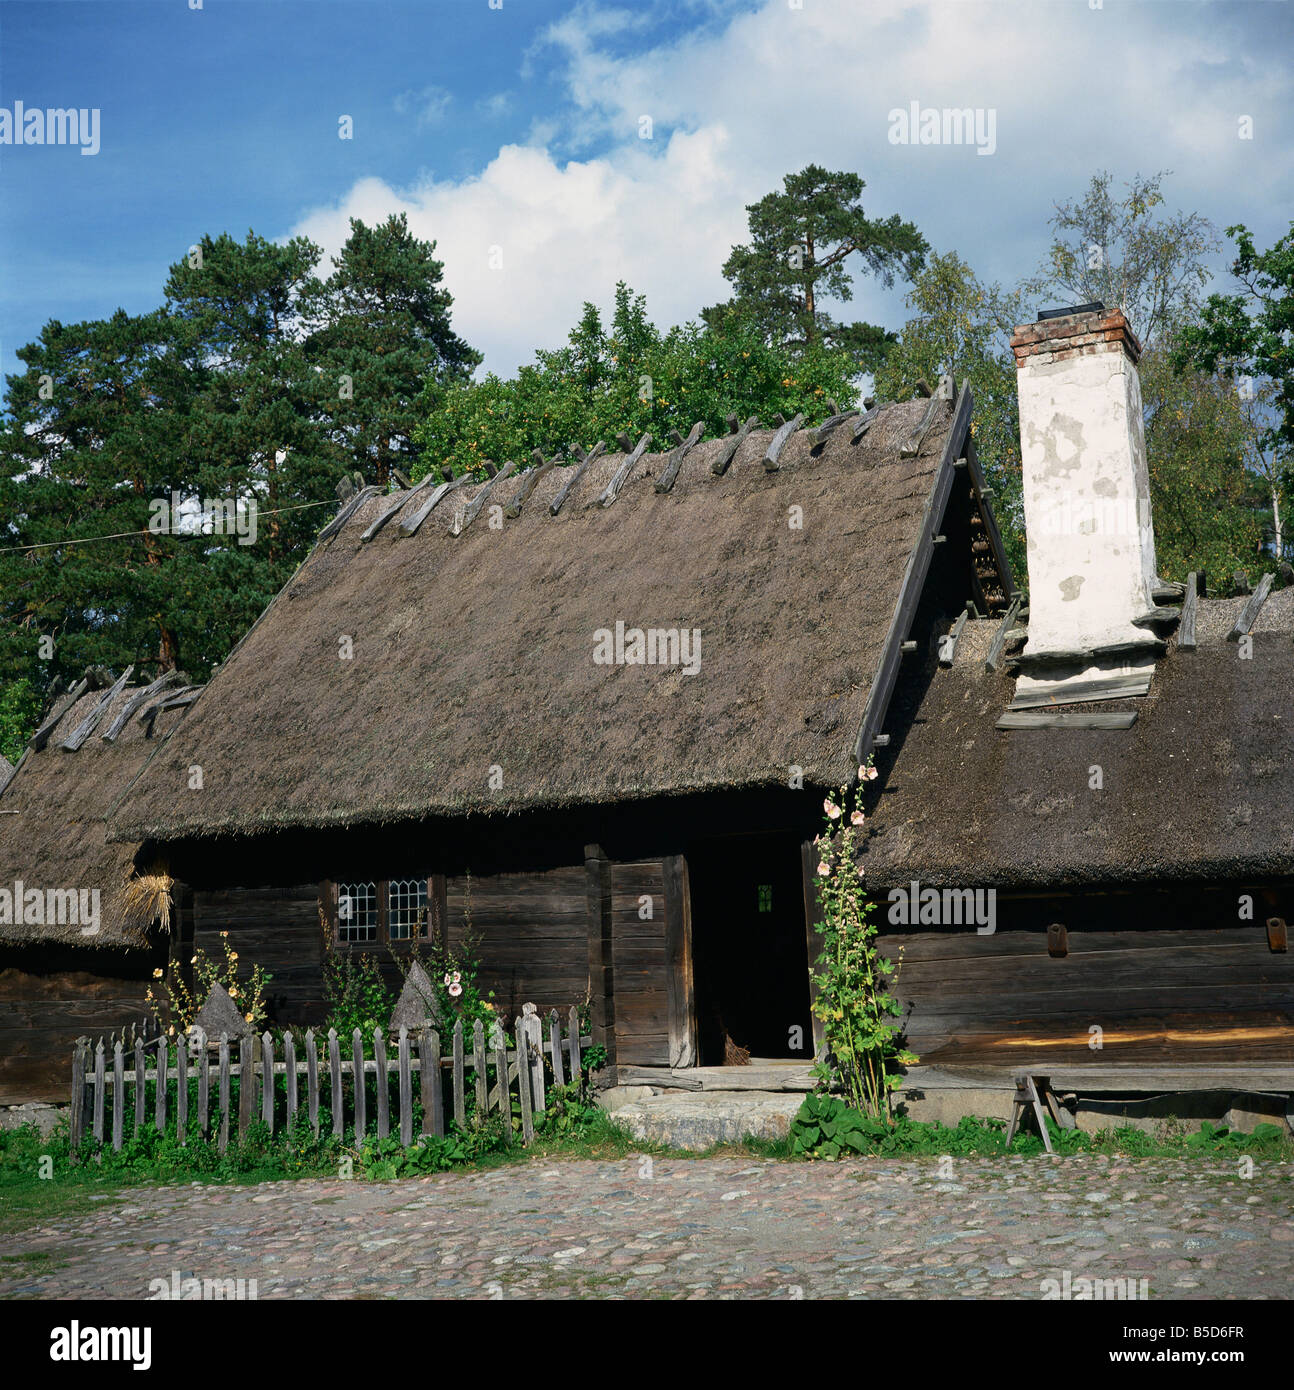 C18th Holzhaus mit Reetdach des Oktorp Gehöft von Halland im Freilichtmuseum Skansen in Stockholm Schweden Stockfoto